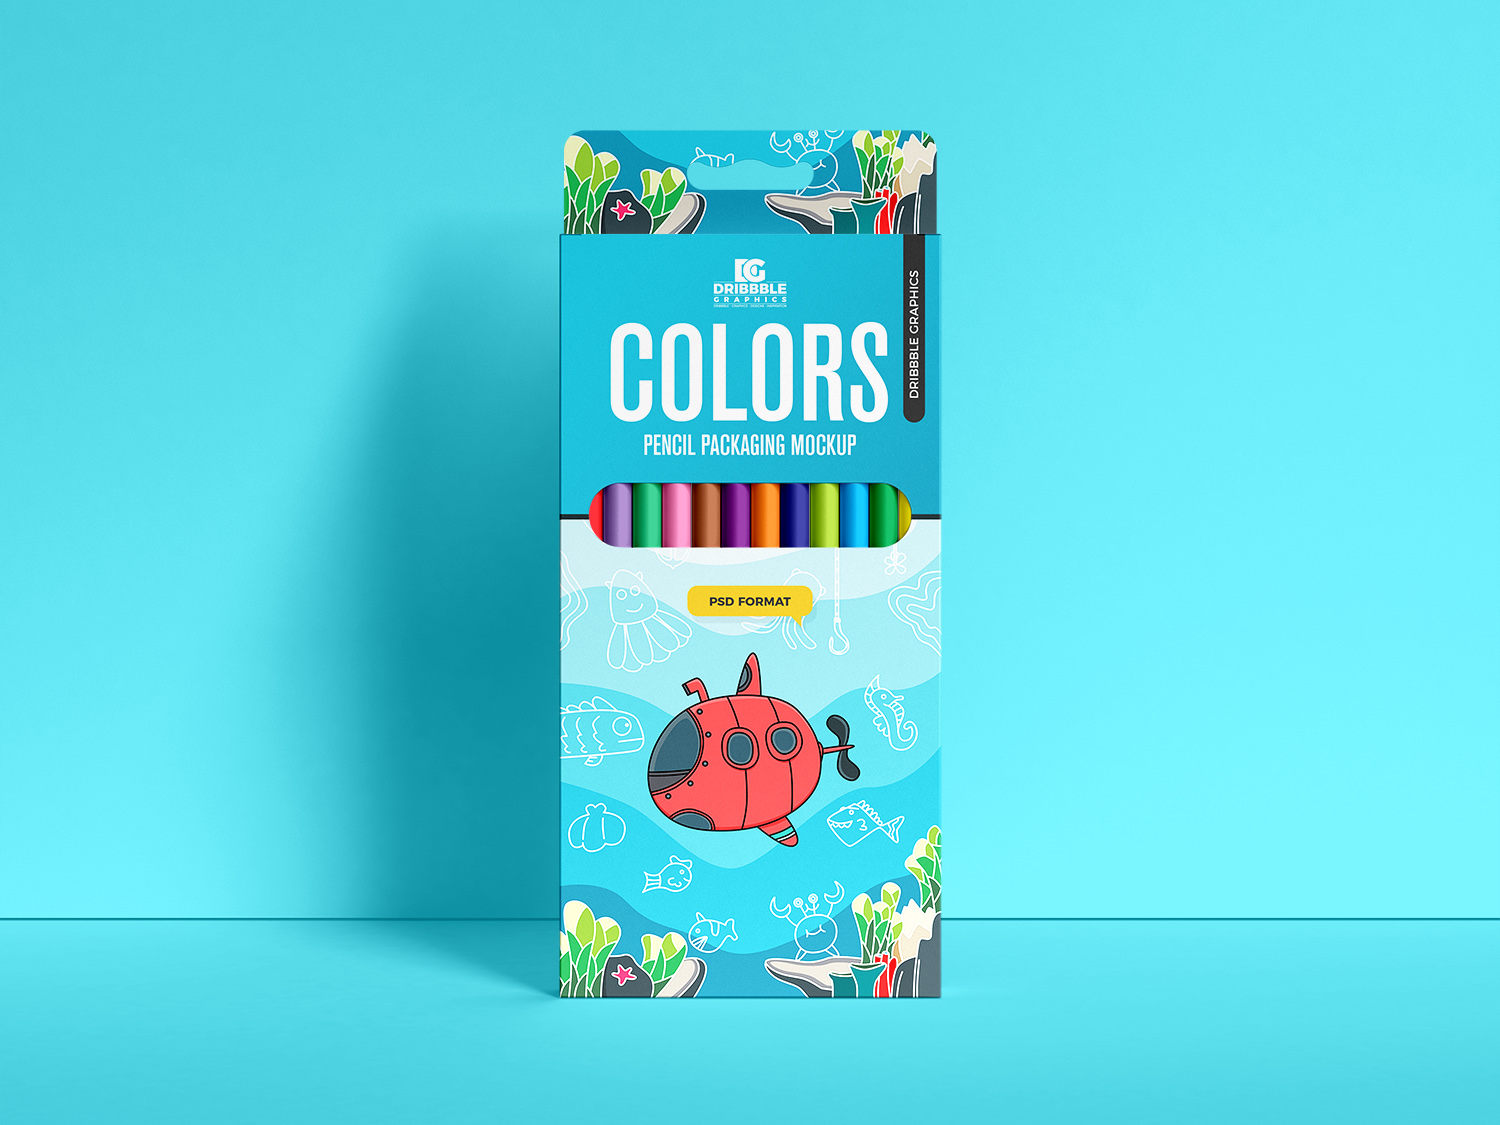 Maqueta de embalaje de colores lápiz